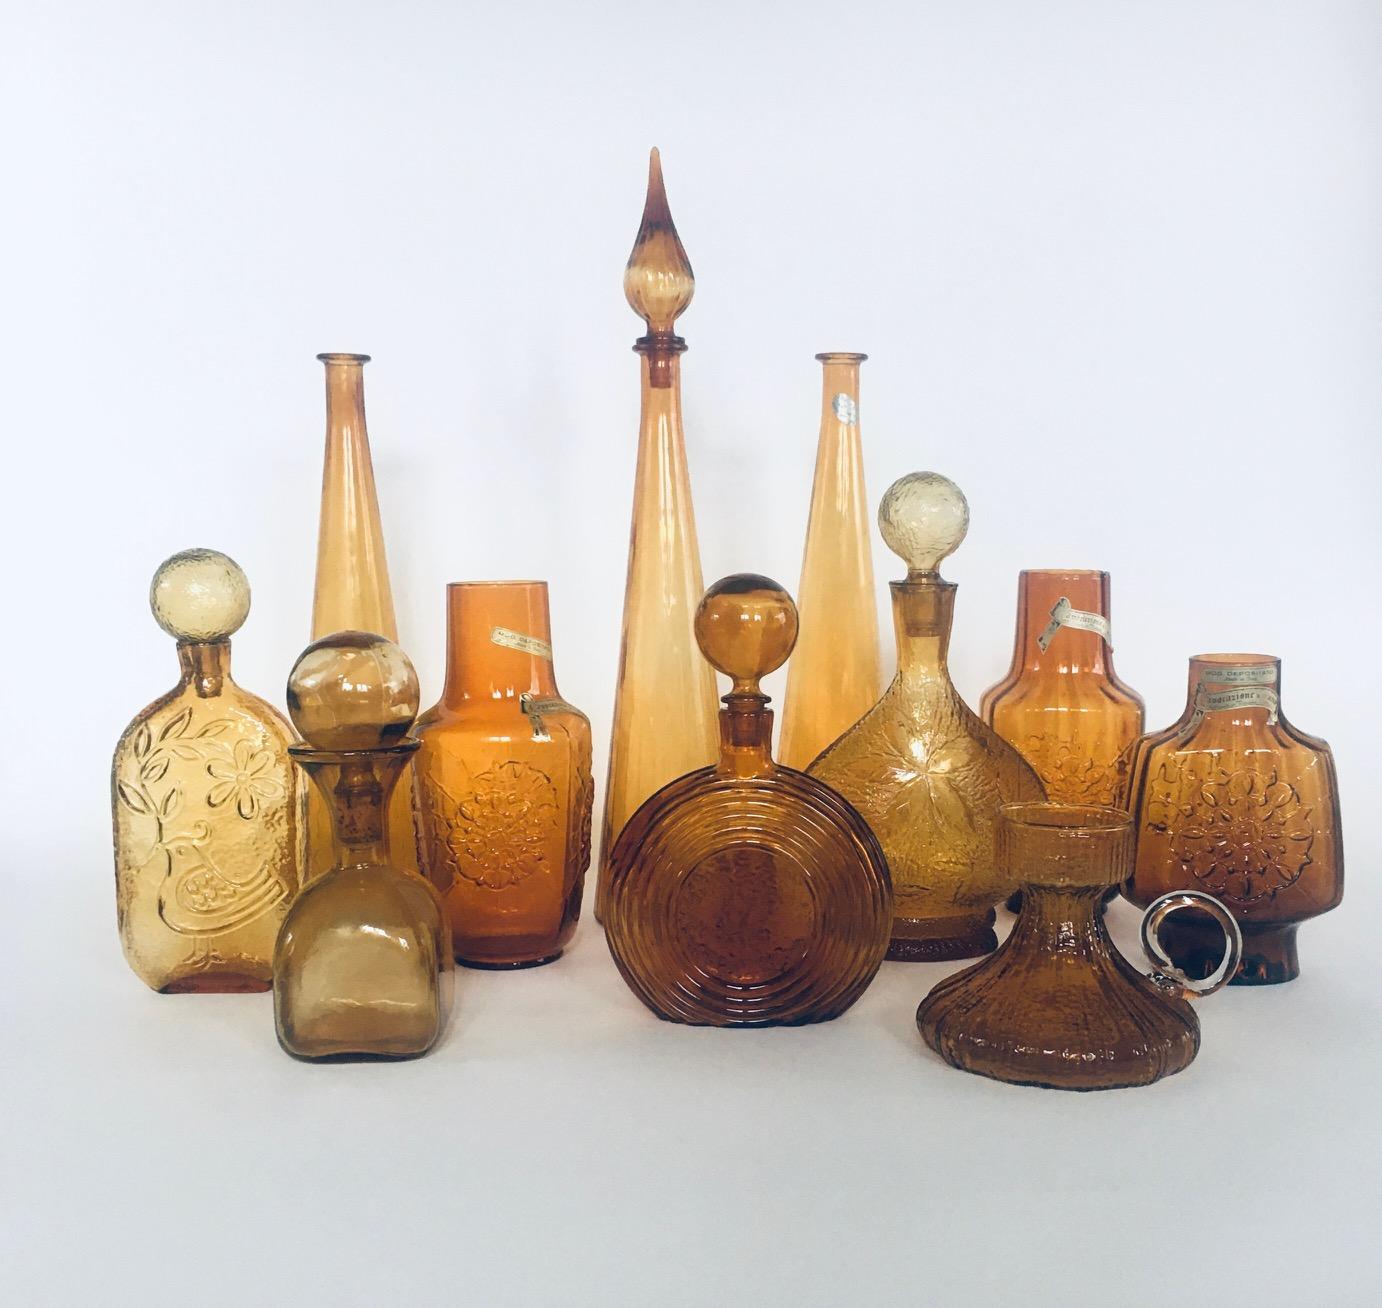 Collection of vintage Amber color Glass Vases & Decanters. Alle stammen aus der Zeit der 1960er Jahre. Italien, Frankreich und Skandinavien hergestellt. Empoli und anderes Designglas. Satz mit 11 verschiedenen Teilen. Alle sind in bernsteinfarbenem